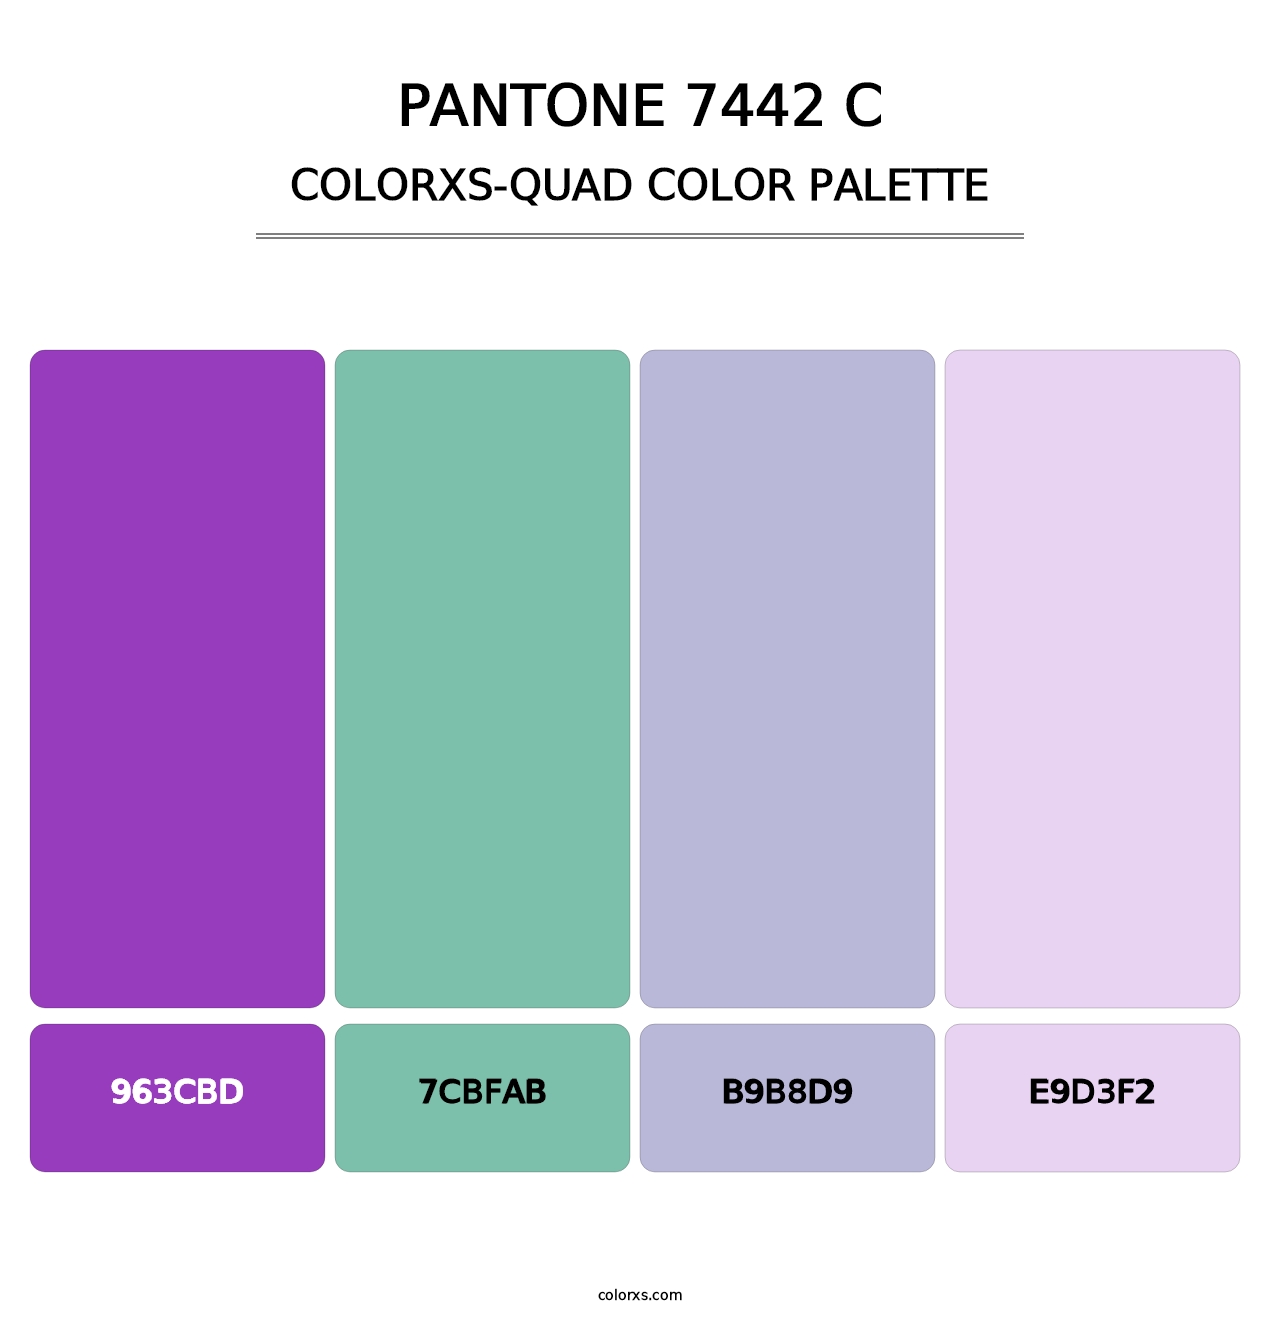 PANTONE 7442 C - Colorxs Quad Palette